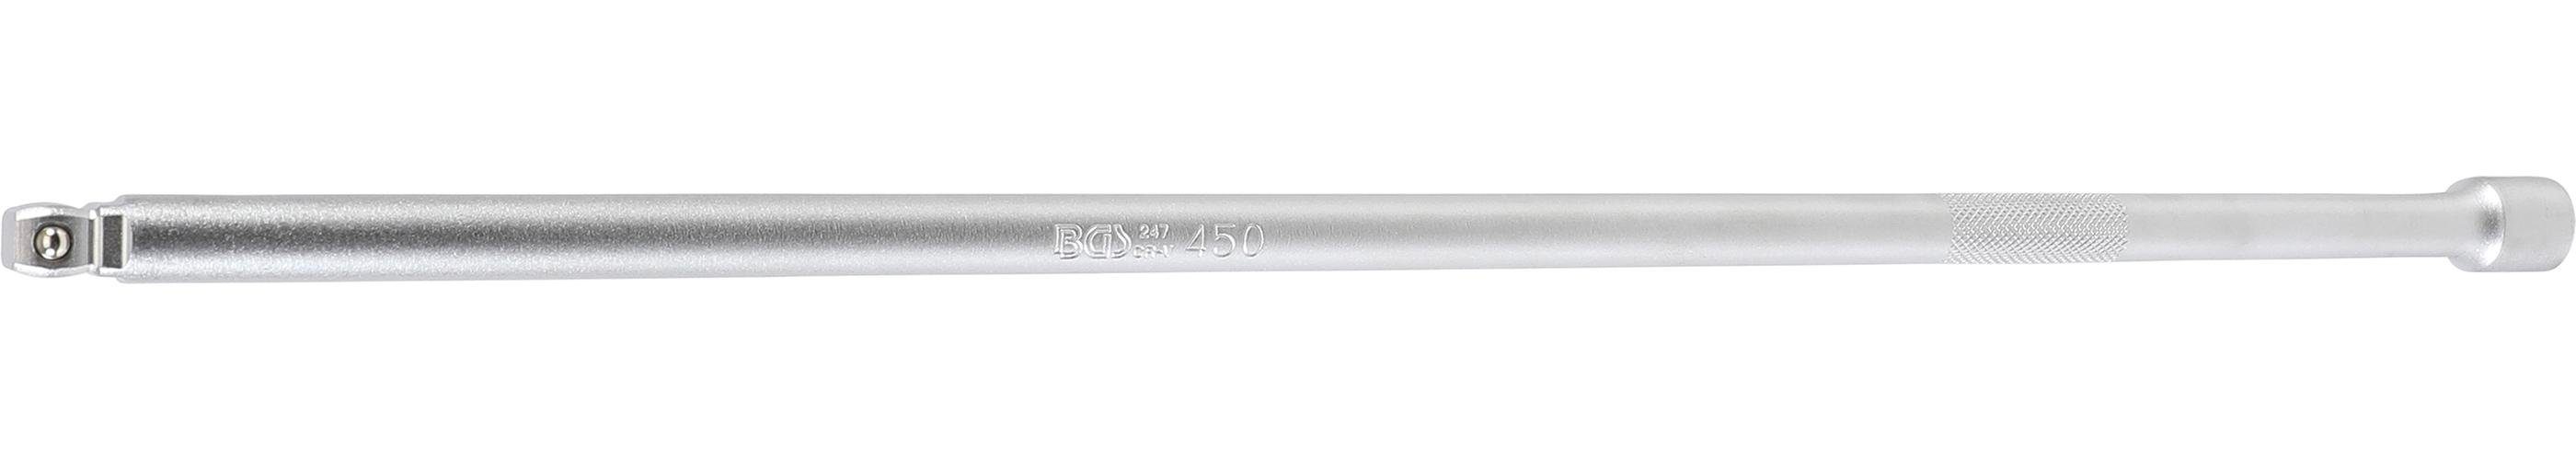 Kipp-Verlängerung, 450 (3/8), technic BGS mm Ratsche 10 mm